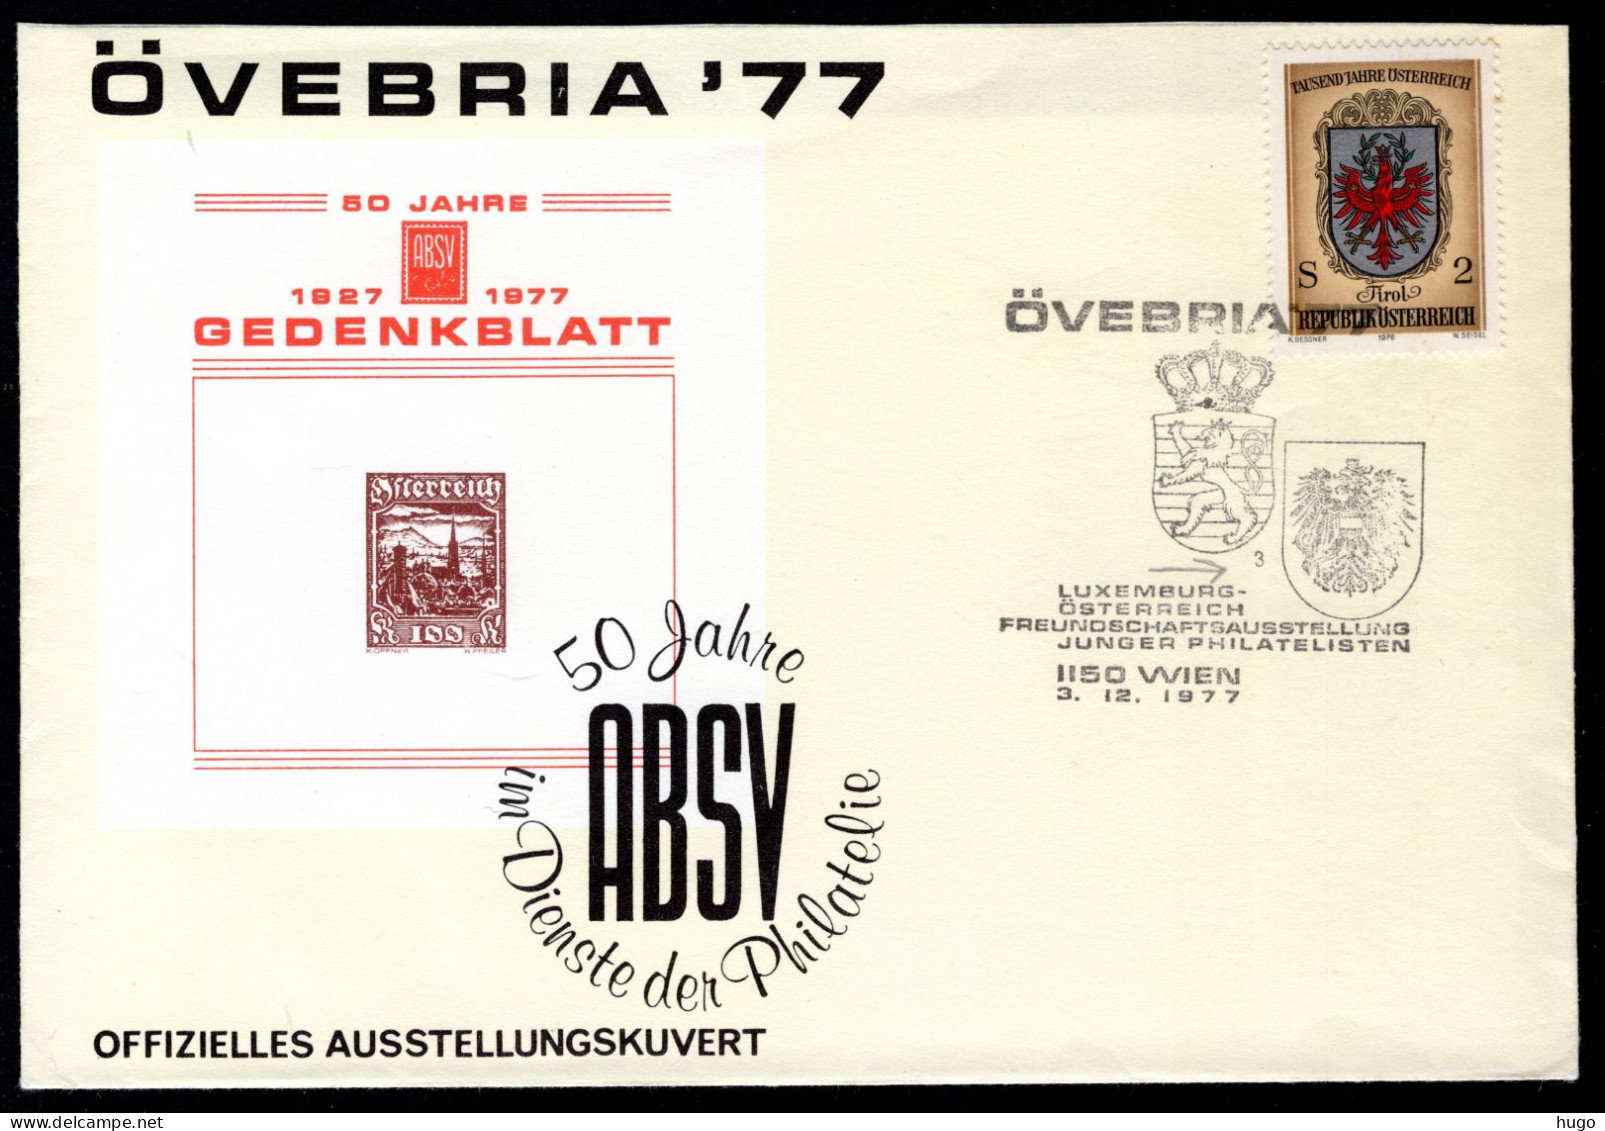 OOSTENRIJK Yt. Luxemburg - Osterreich Freundschaft 3-12-1977 ÖVEBRIA '77 - Briefe U. Dokumente